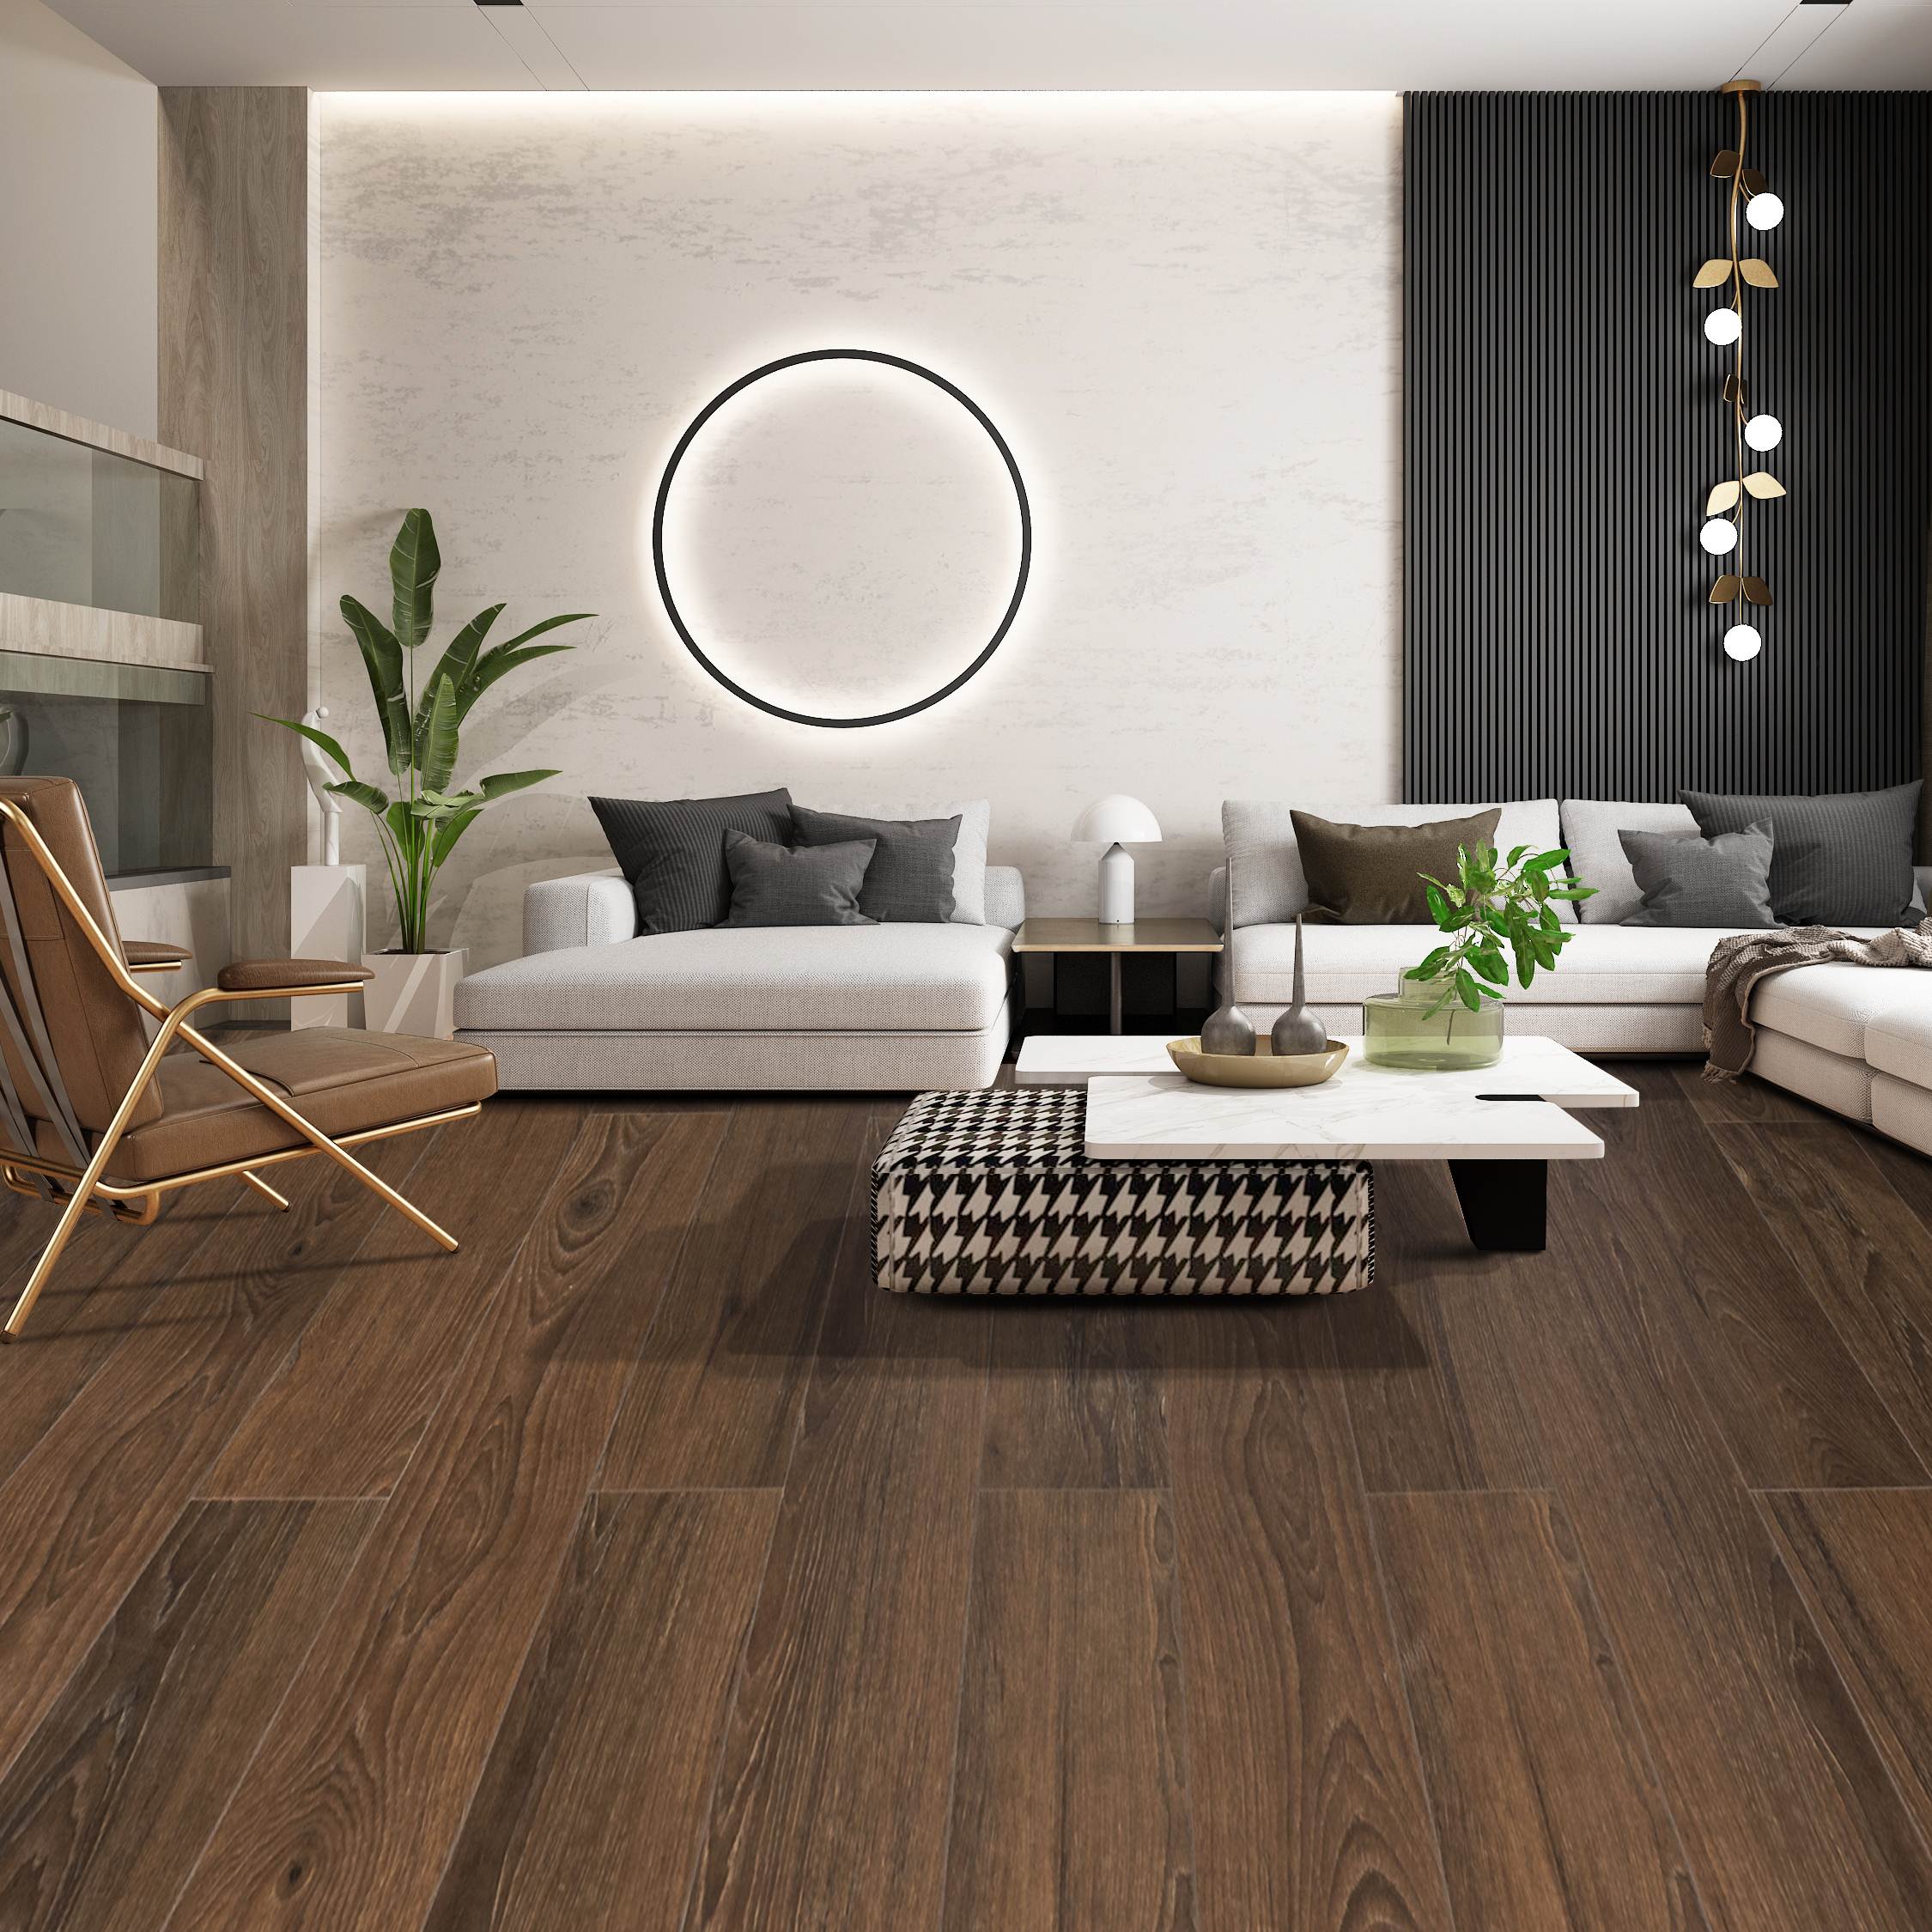 Mẫu sàn gỗ DO94 phù hợp với mọi công trình, nhà ở, tính ứng dụng cao.